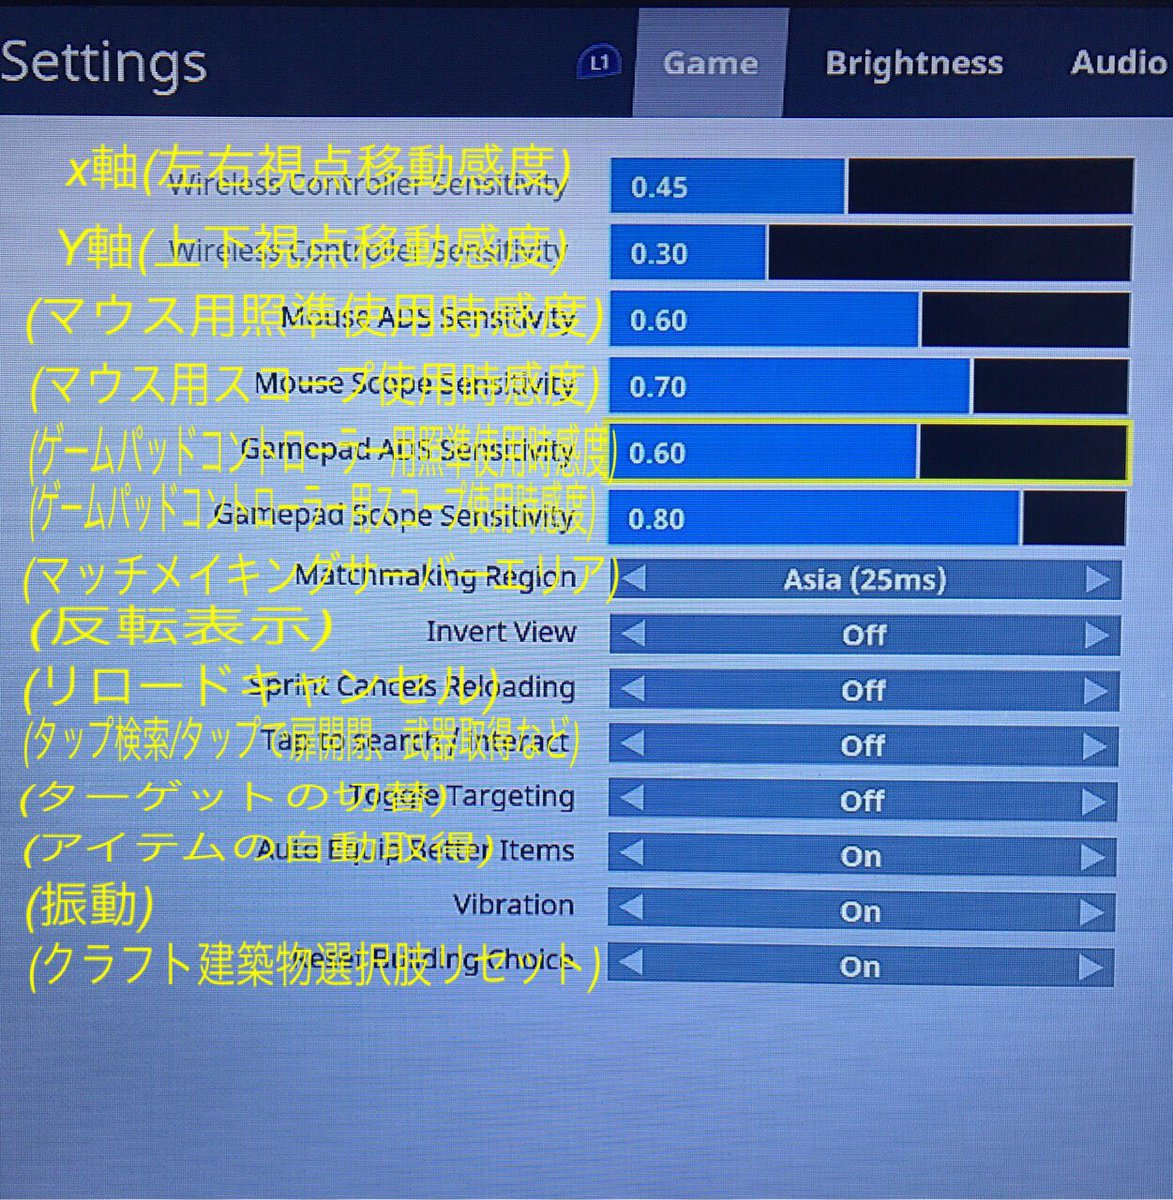 ট ইট র 朧蝶 Chap Fortnite 新パッチ導入後の設定が使用サーバー含め全てリセットされている状態なので再設定の必要がありました 添付の写真はps4版のゲーム設定の画面 英語表記の所を 日本語に直したものです 表示の数値は適当に動かしたものです